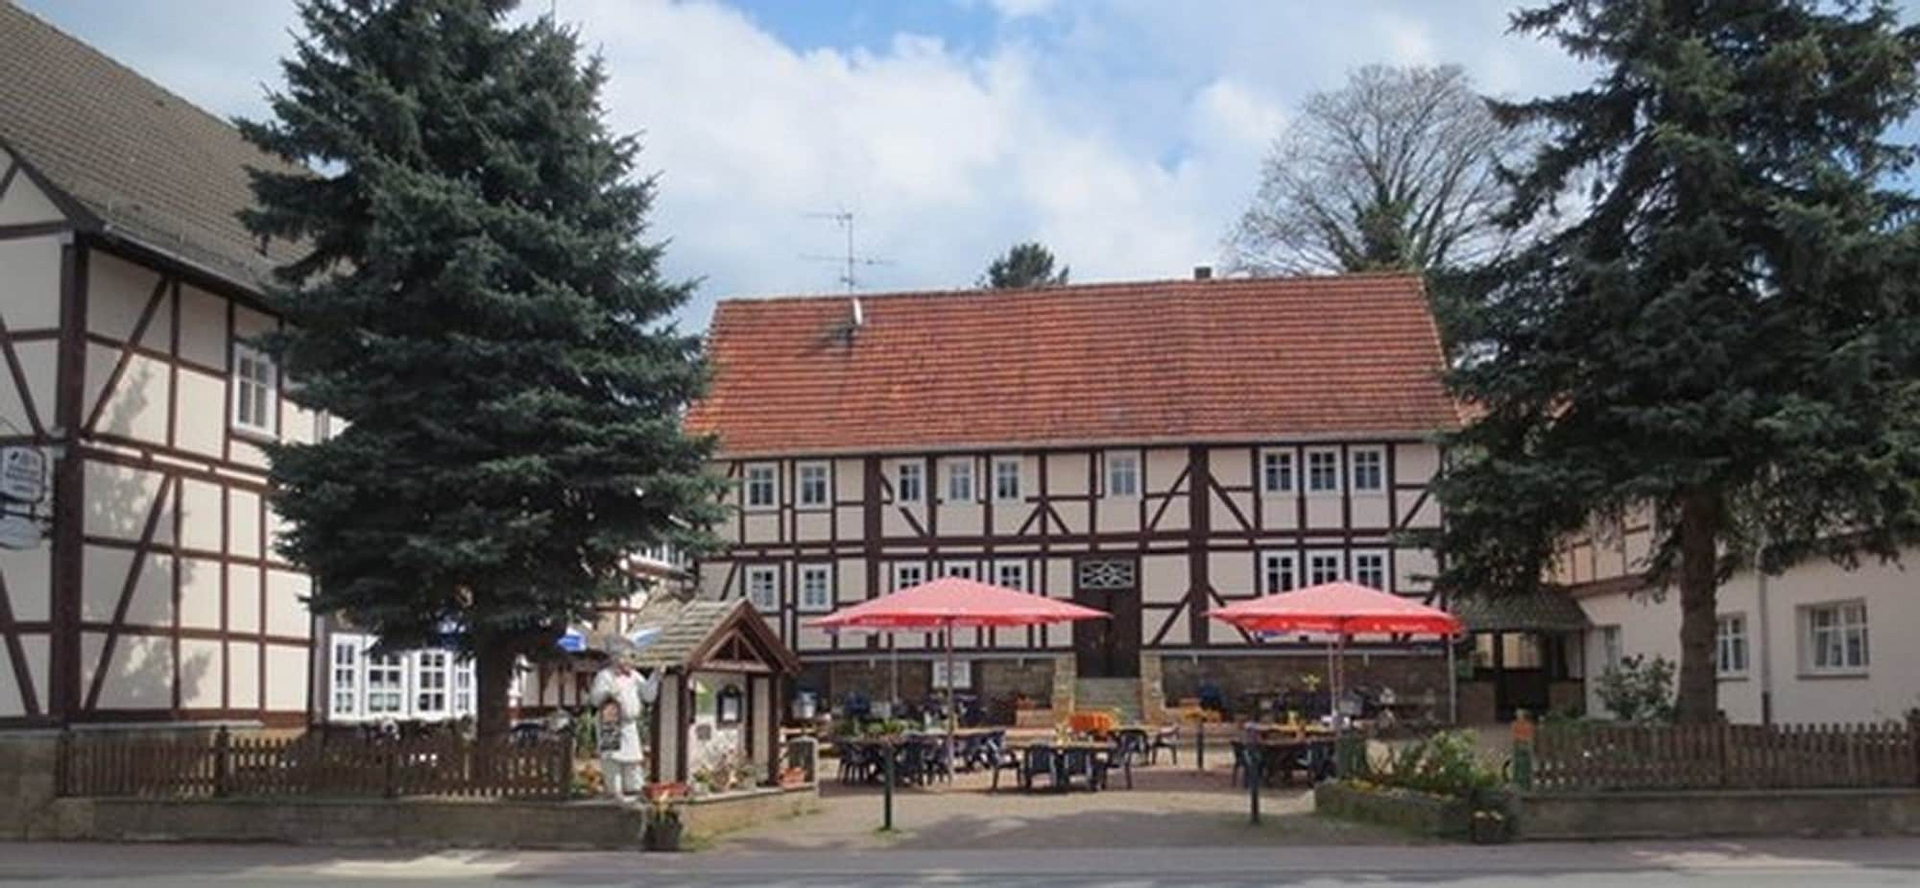 Exterior & Views 1, Hotel-Restaurant Johanneshof Wagner UG, Hersfeld-Rotenburg